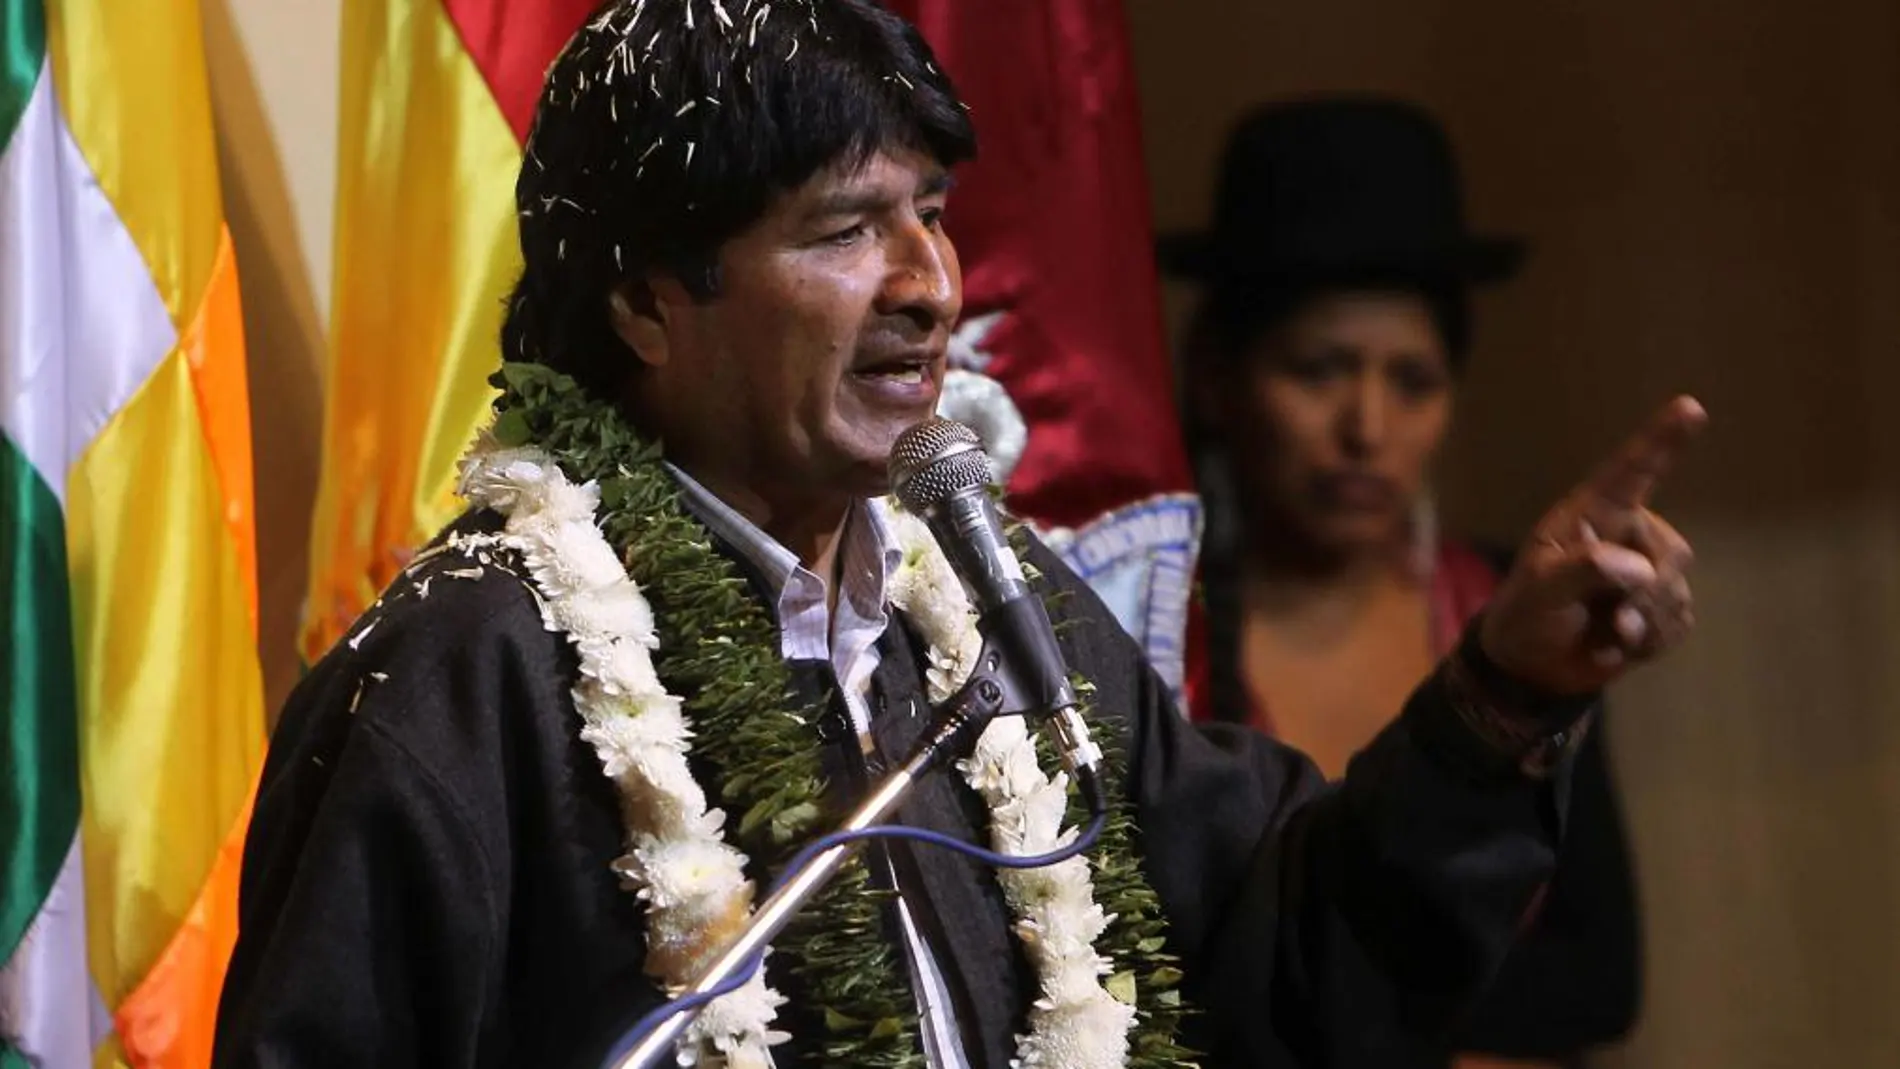 El presidente boliviano Evo Morales (c) habla hoy, miércoles 17 de julio de 2013, durante un encuentro con campesinos e indígenas leales en el que analizarán el incidente sufrido por su avión en Europa en el Palacio de Telecomunicaciones en La Paz (Bolivia).